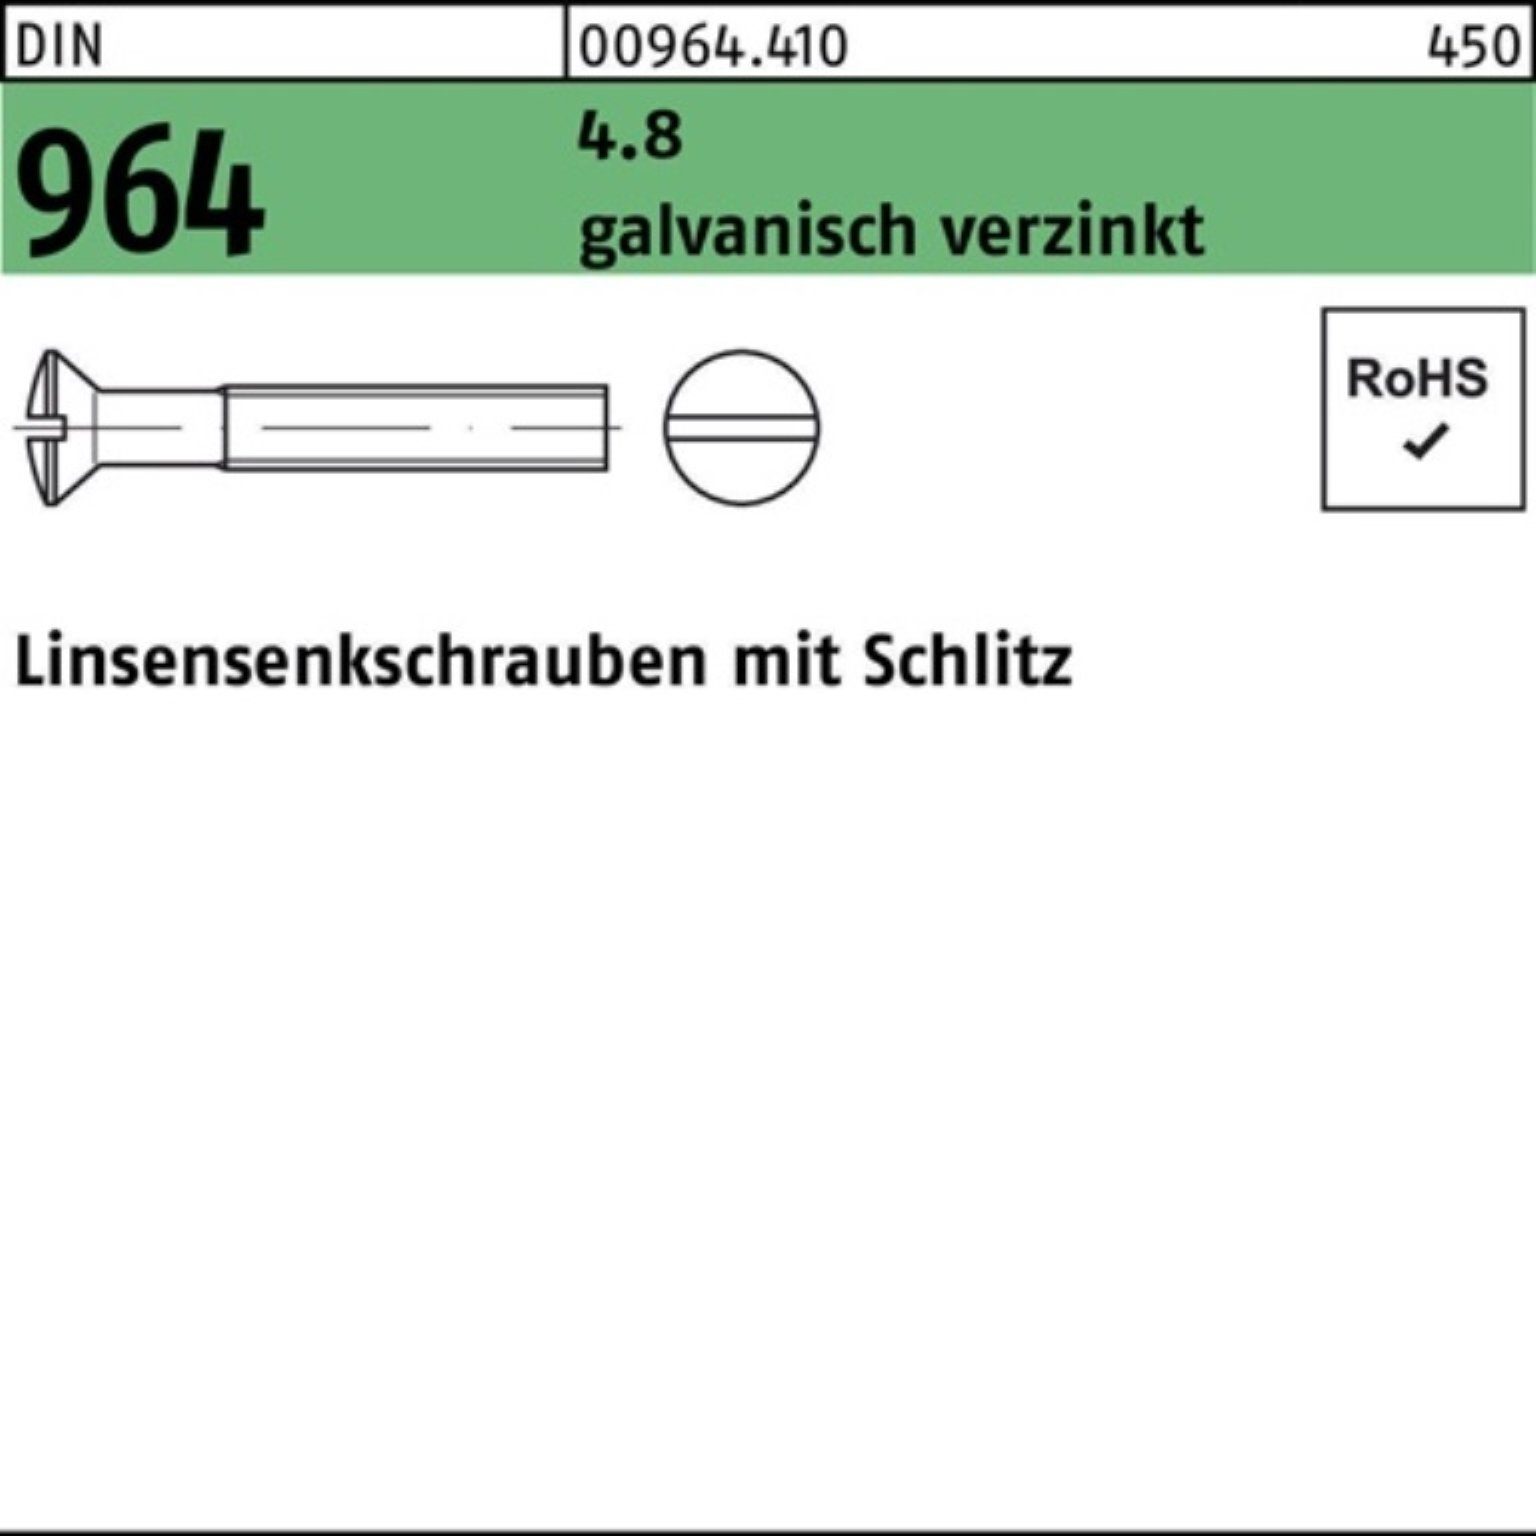 Reyher Linsenschraube 1000er Pack Linsensenkschraube Schlitz 964 DIN galv.verz. 16 1 4.8 M6x